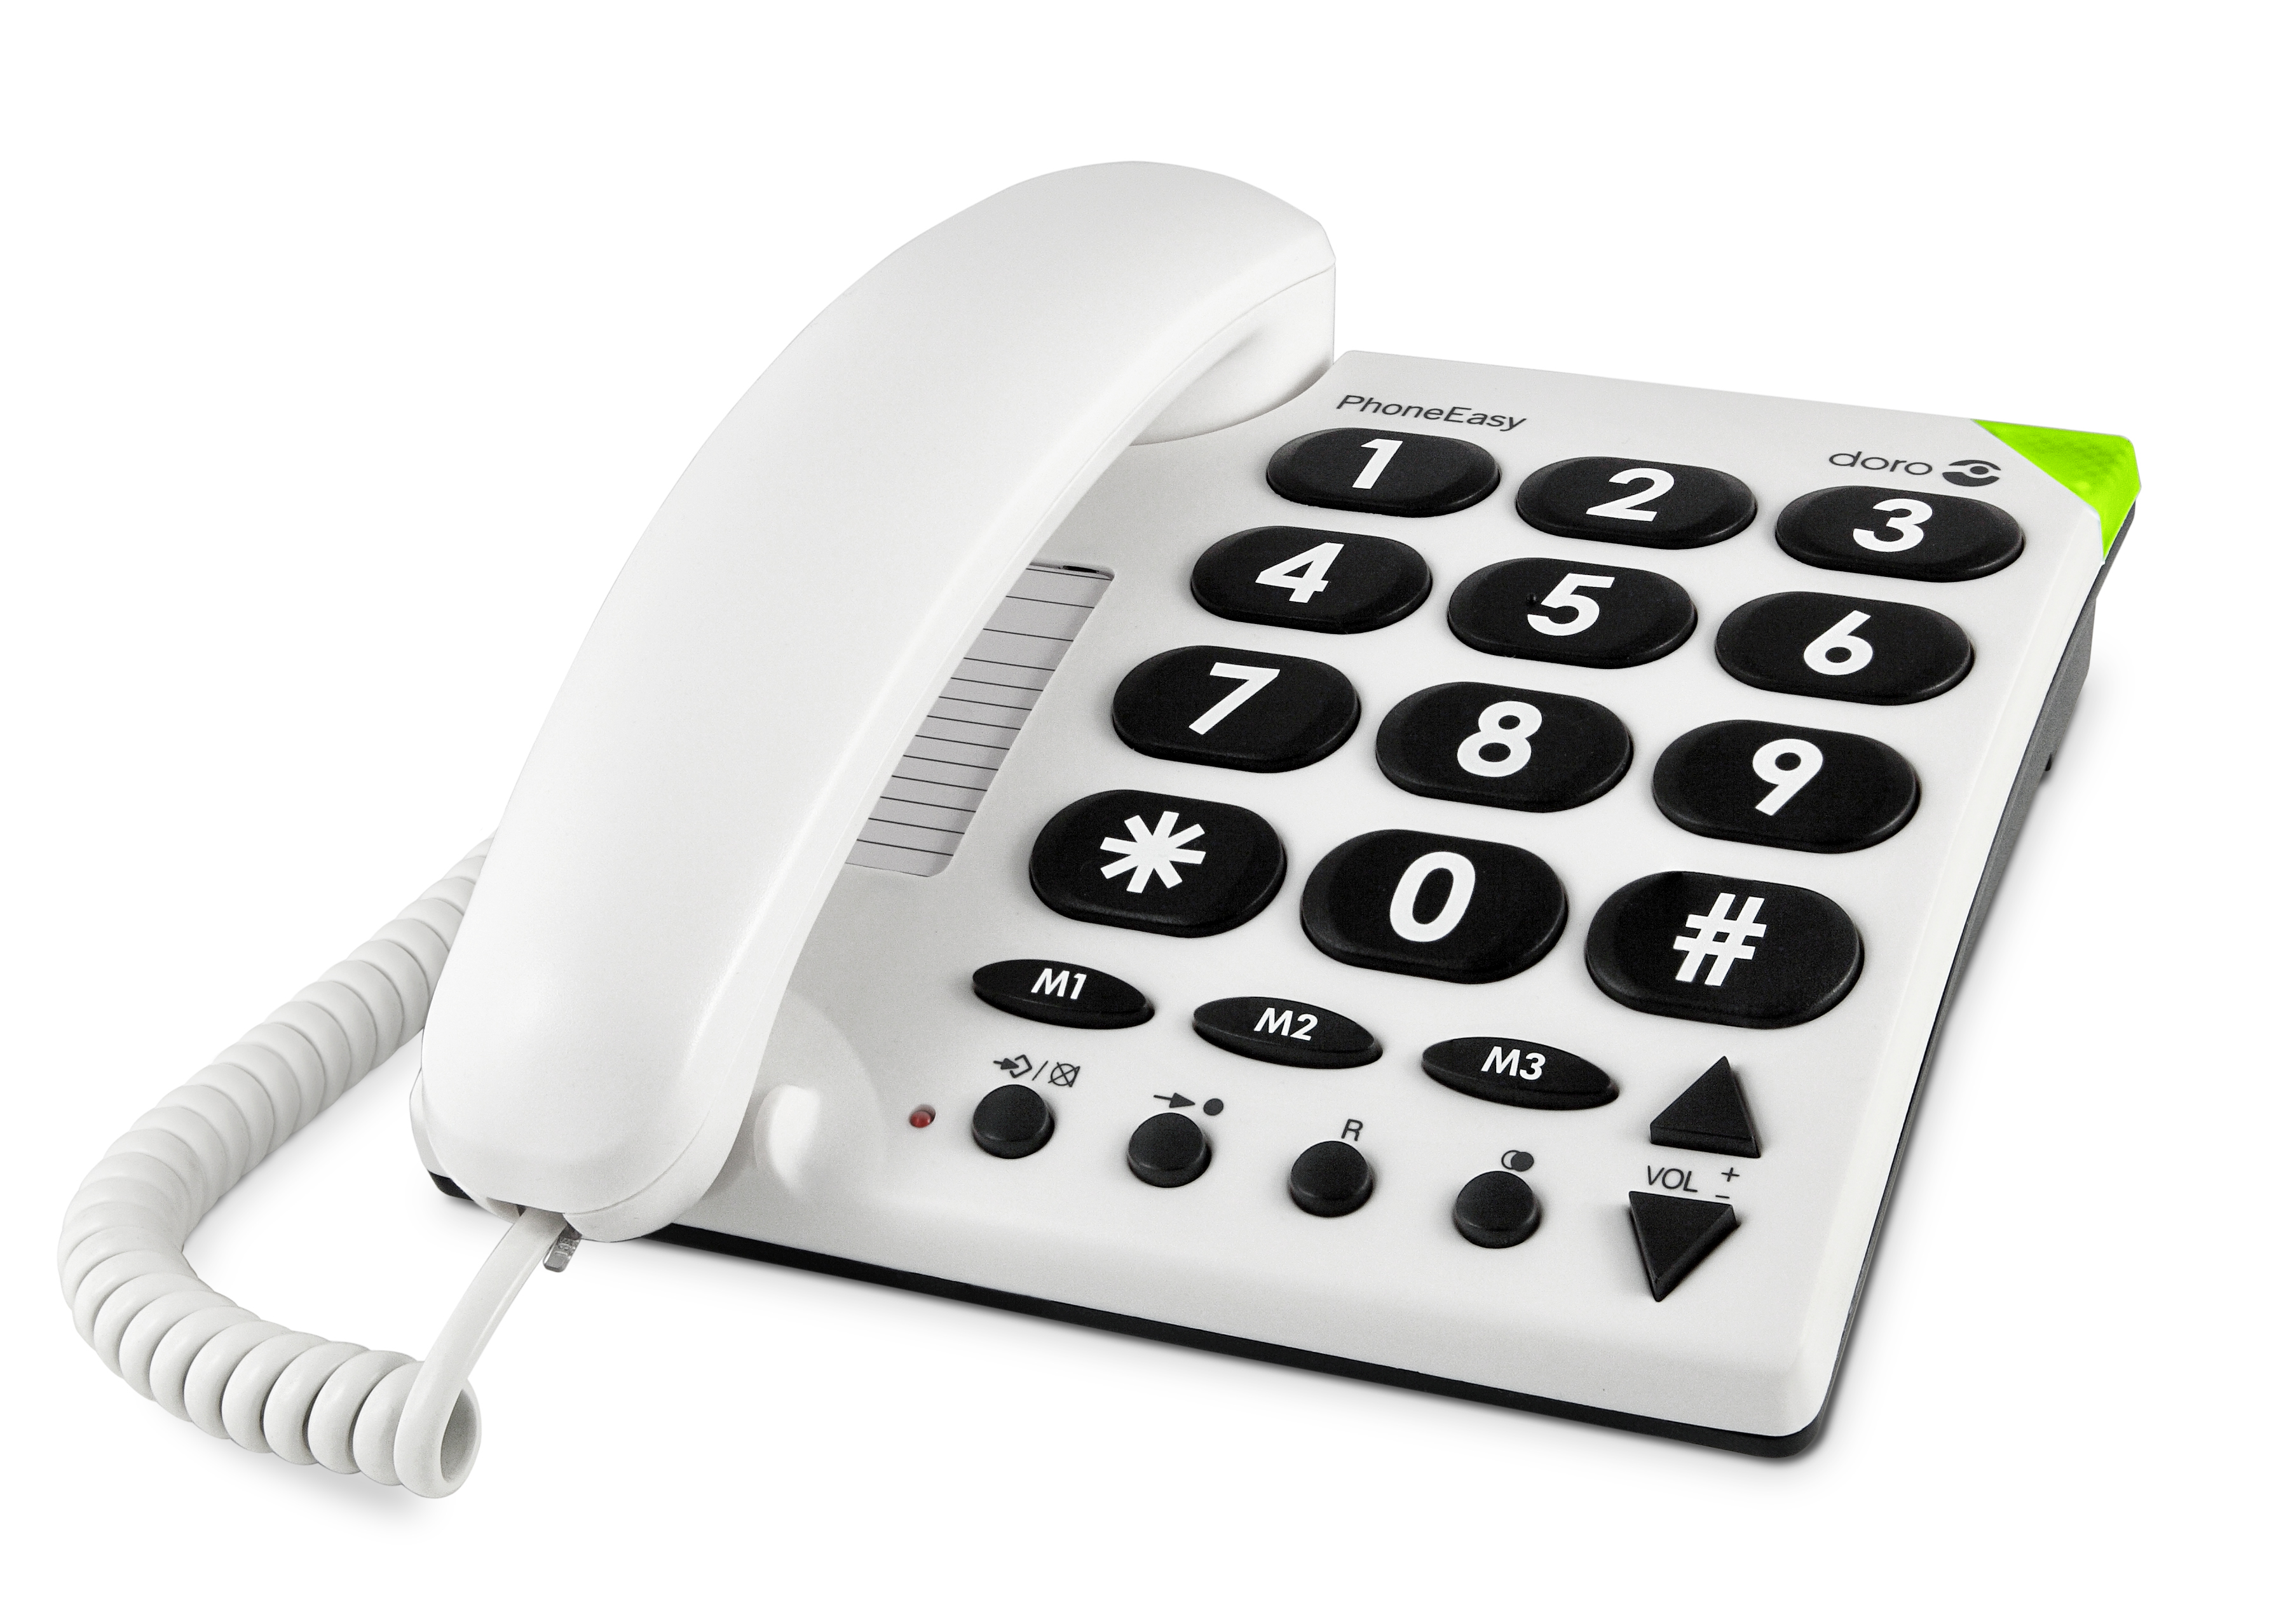 Téléphone portable seniors Doro 5860 2,4 Gris - Téléphone